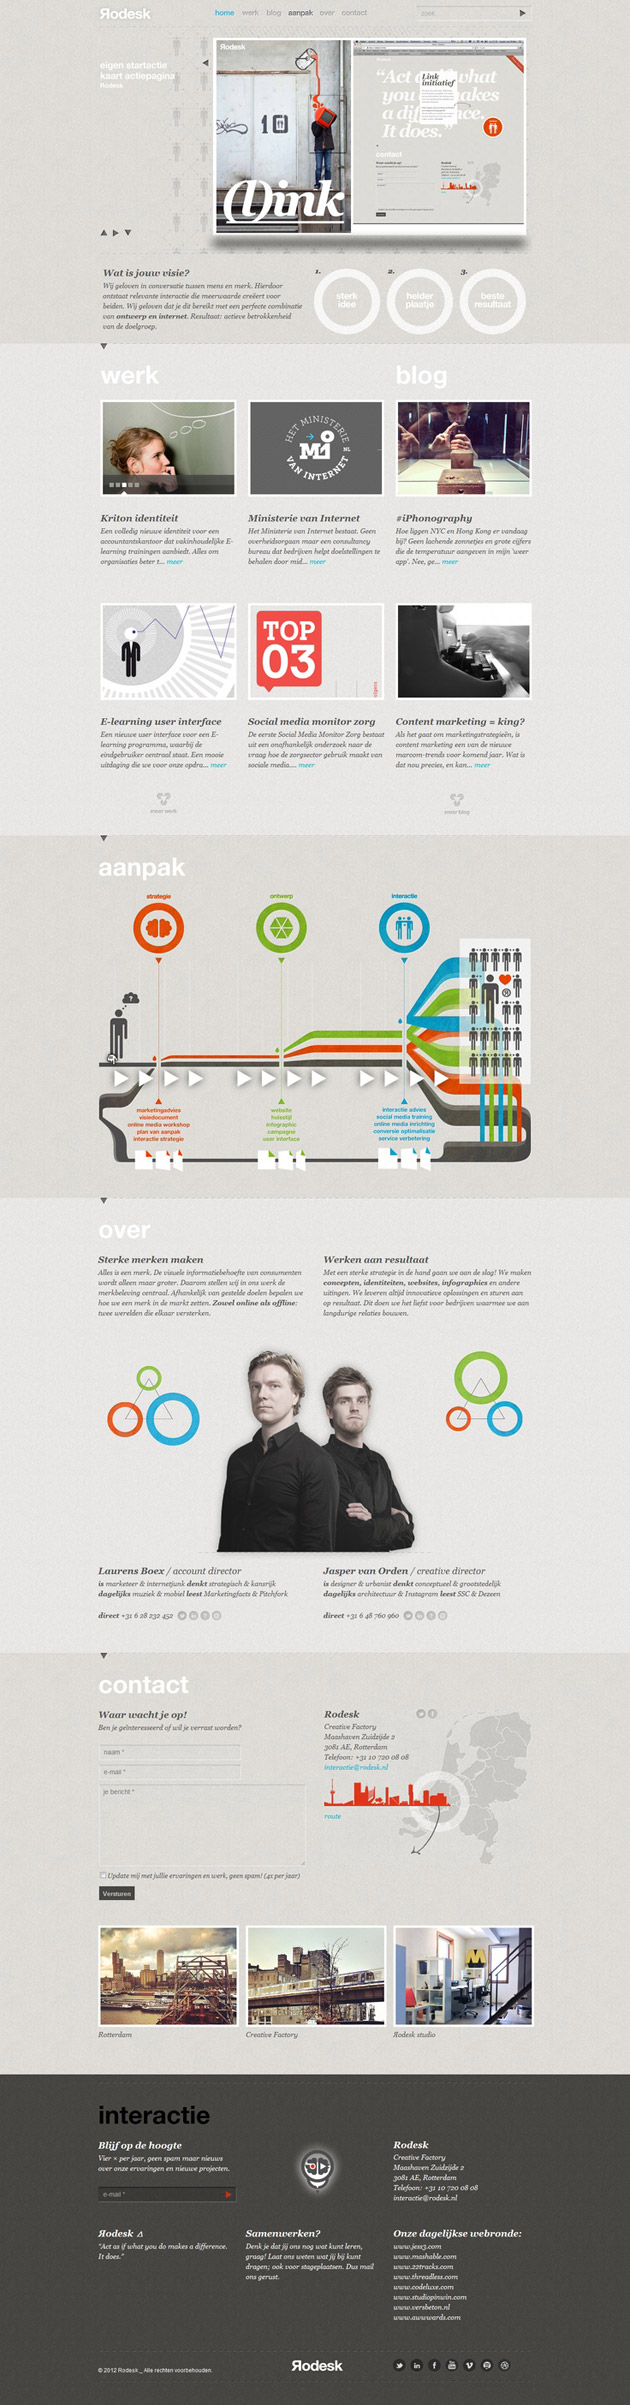 Rodesk- Inspiración web design